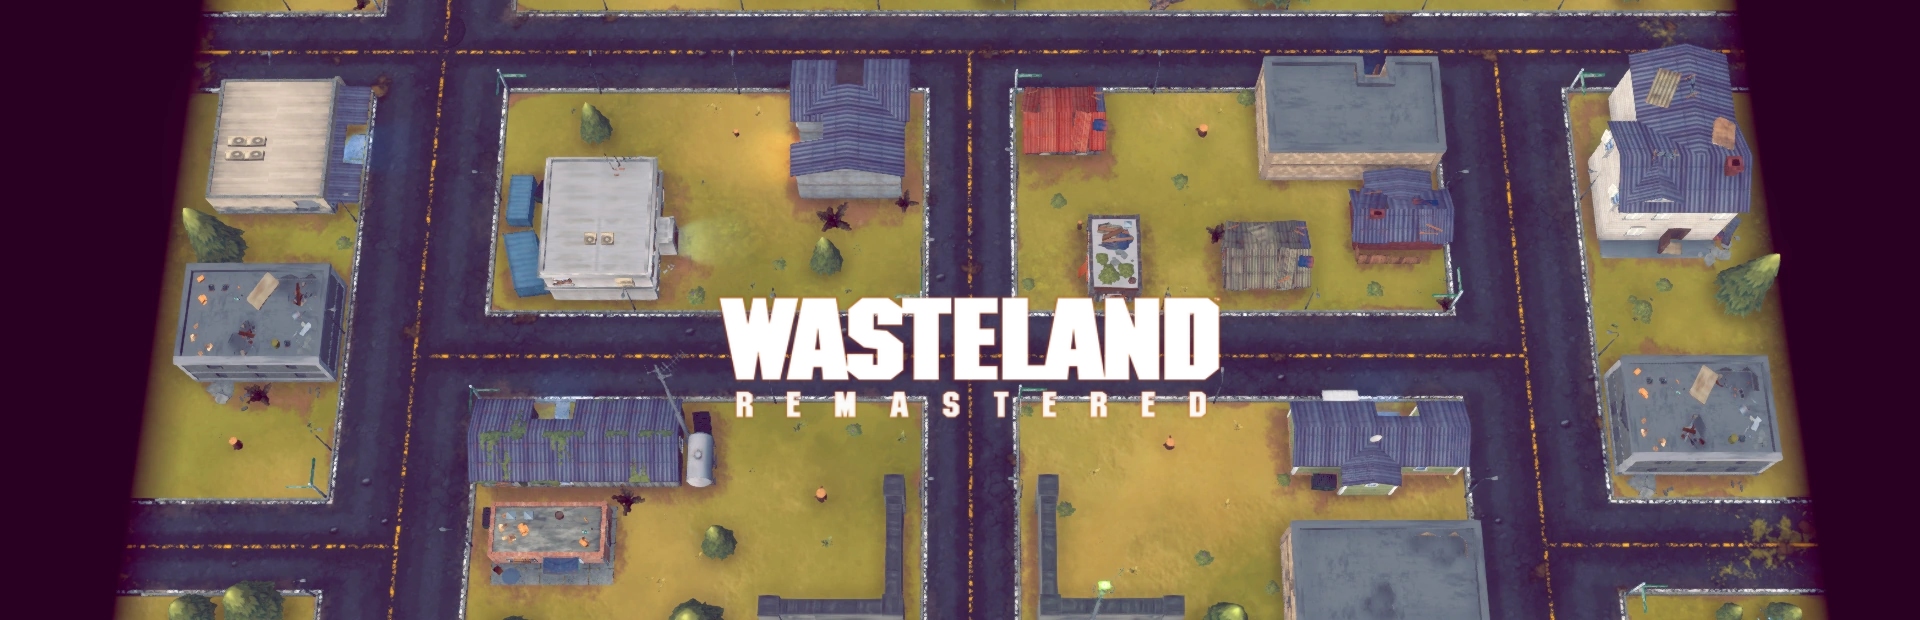 دانلود بازی Wasteland Remastered برای پی سی | گیمباتو